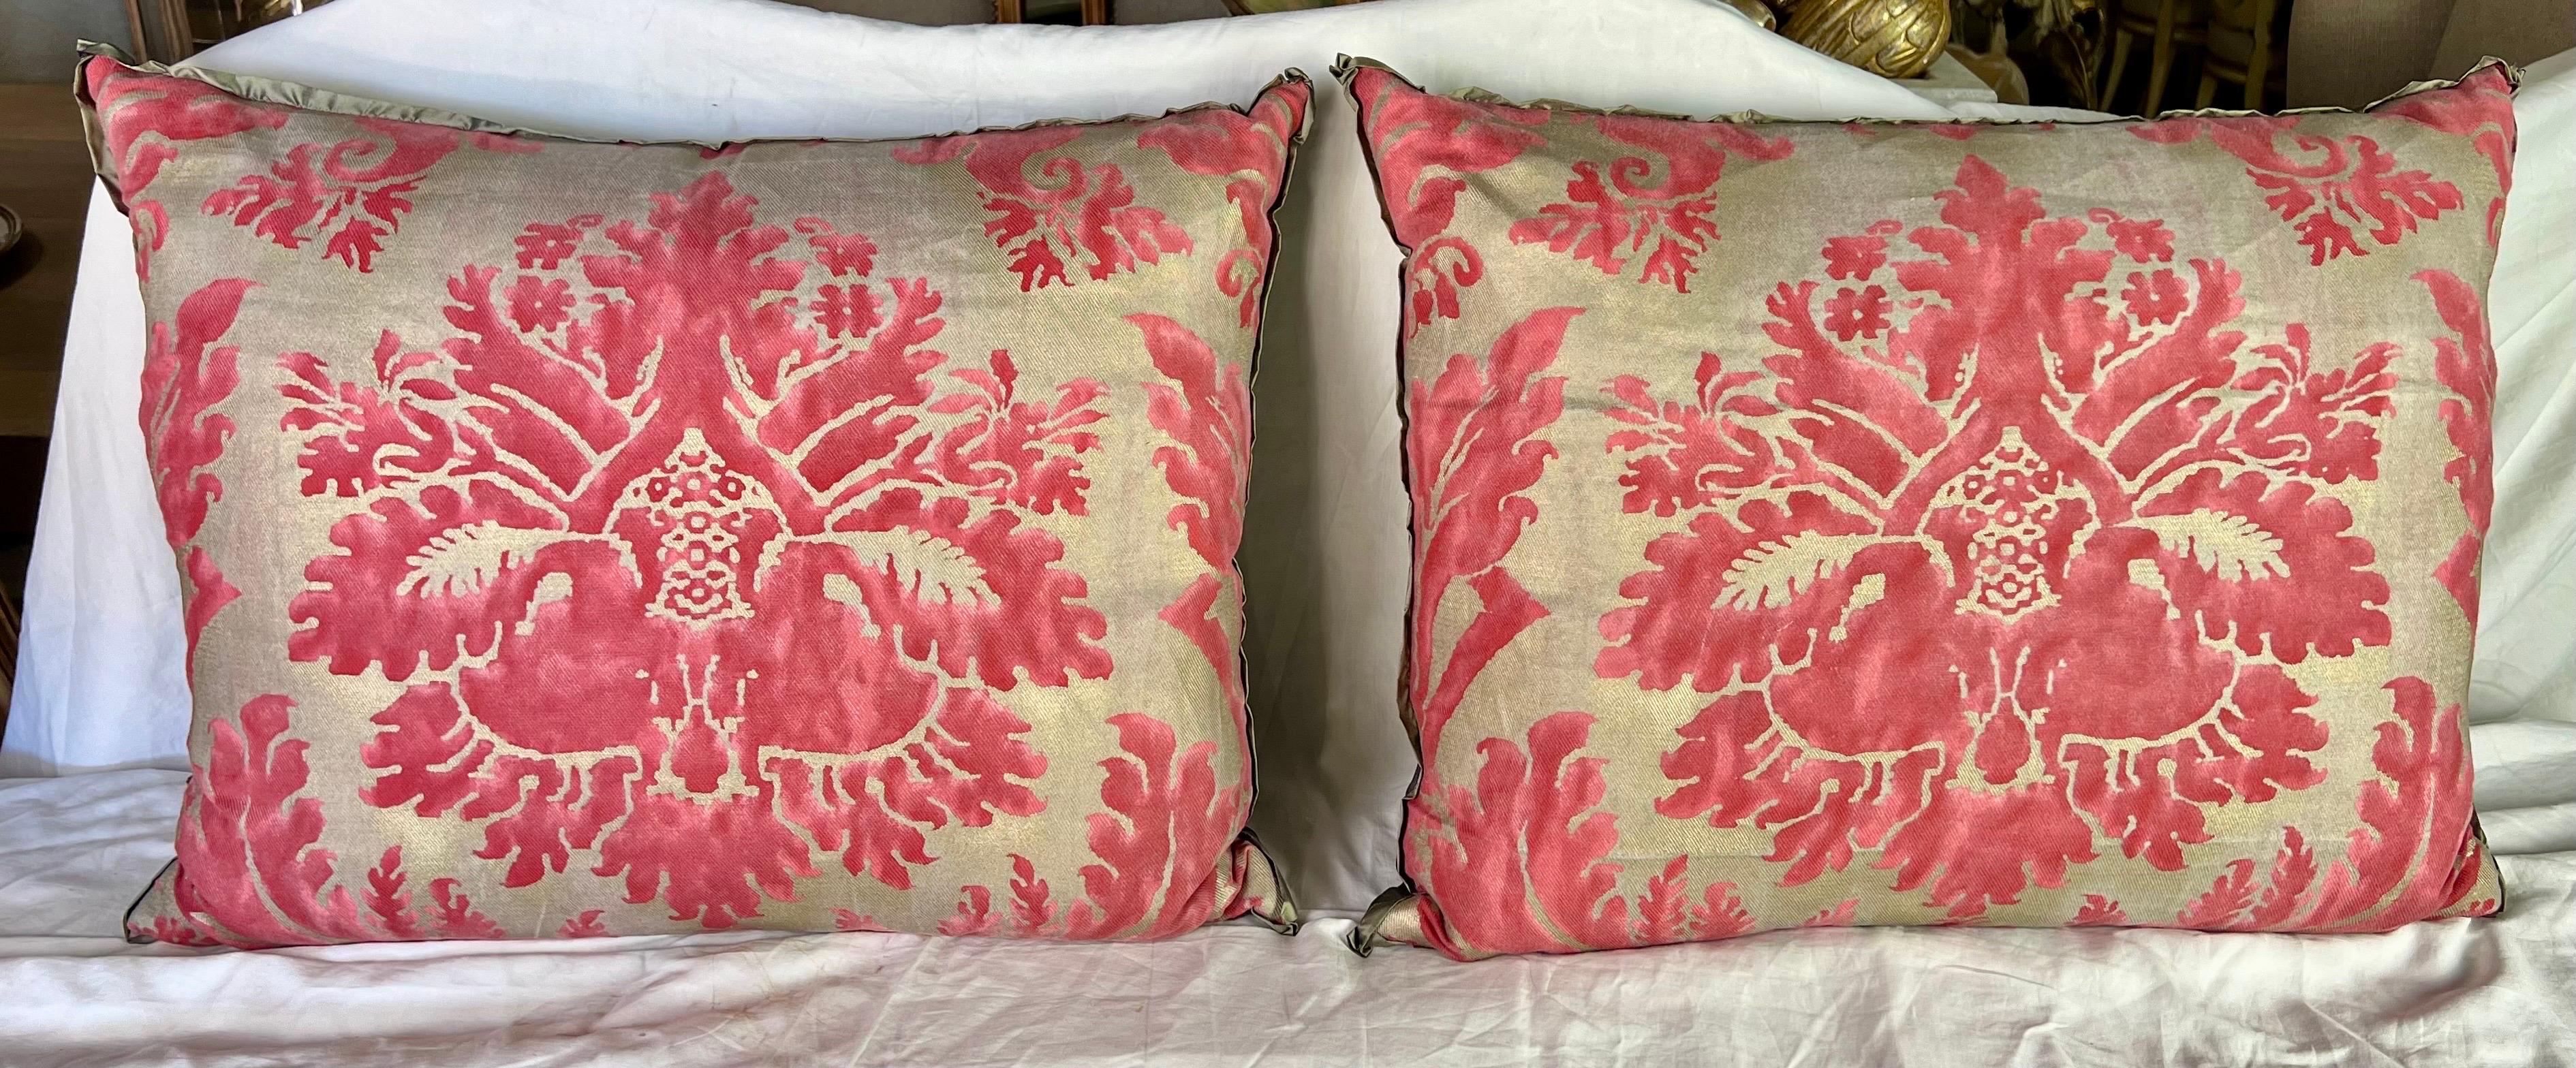 La combinaison de coussins textiles roses et dorés Fortuny d'Italie, dotés d'un dos en soie grise et d'inserts en duvet, apporte une touche luxueuse et un contraste élégant à votre décor.